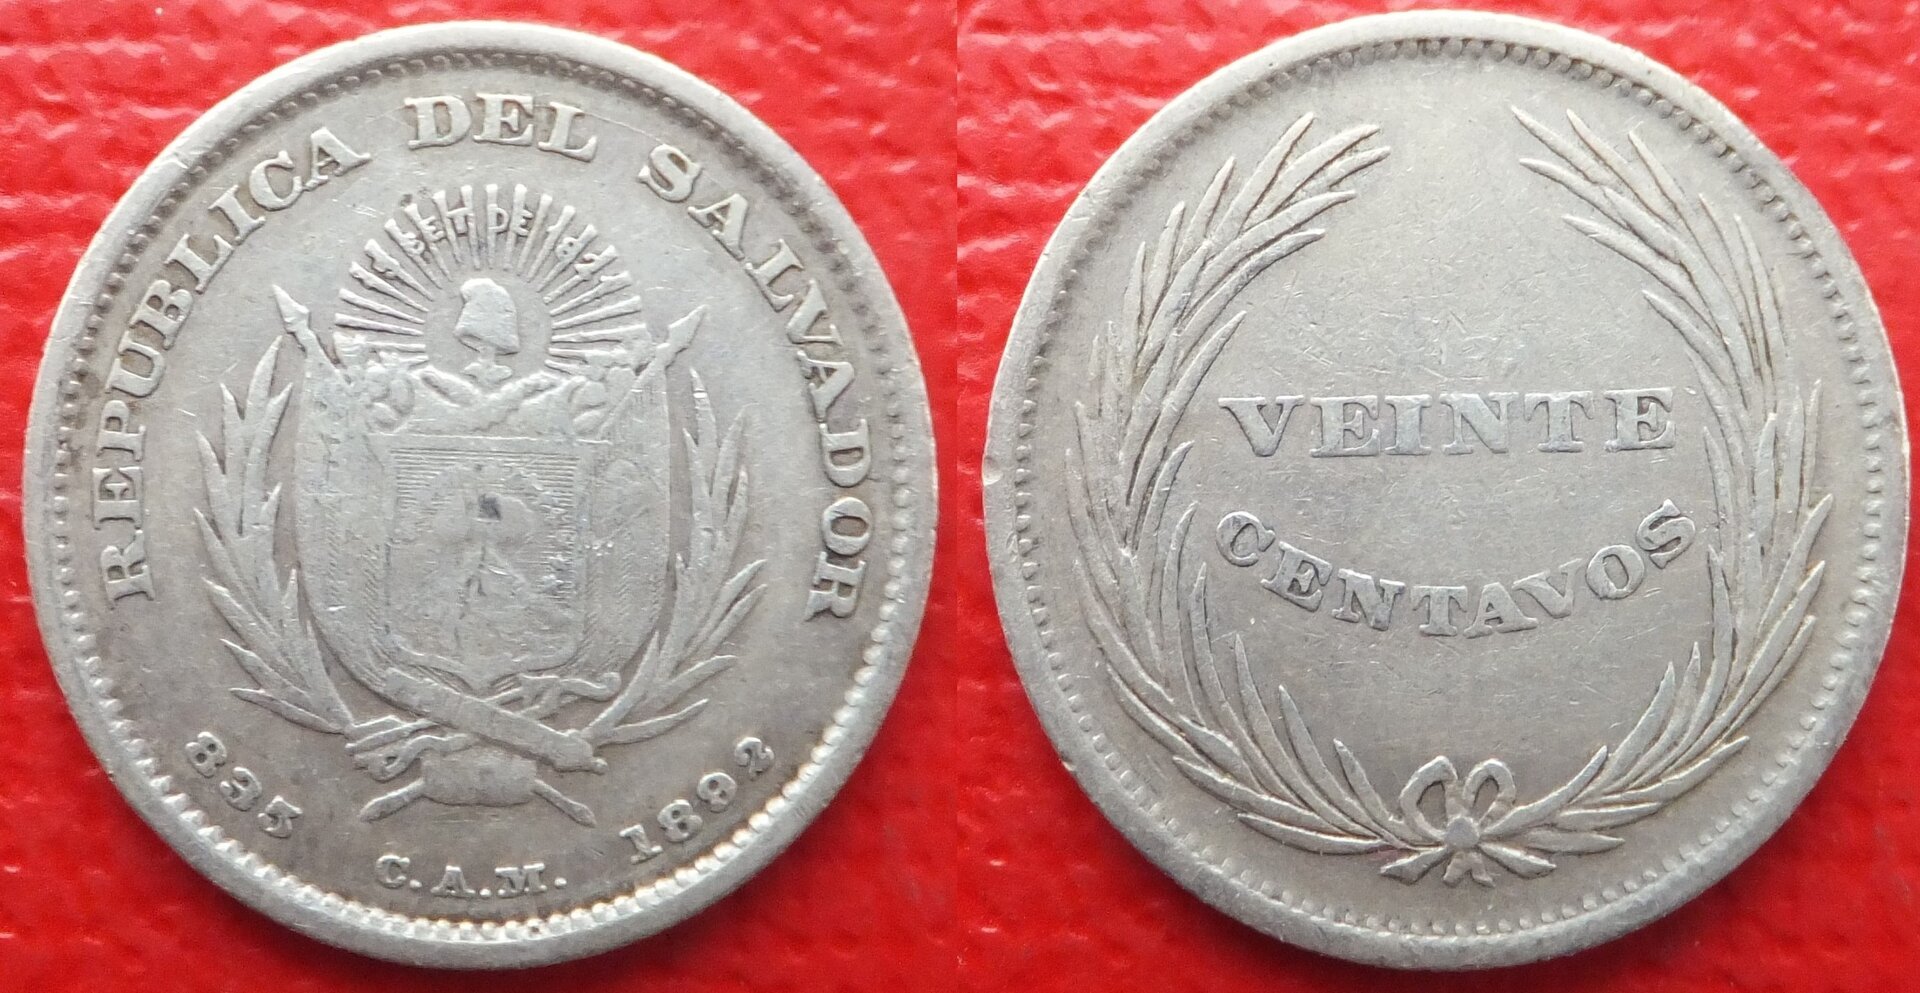 El Salvador 20 centavos 1892 (3).jpg